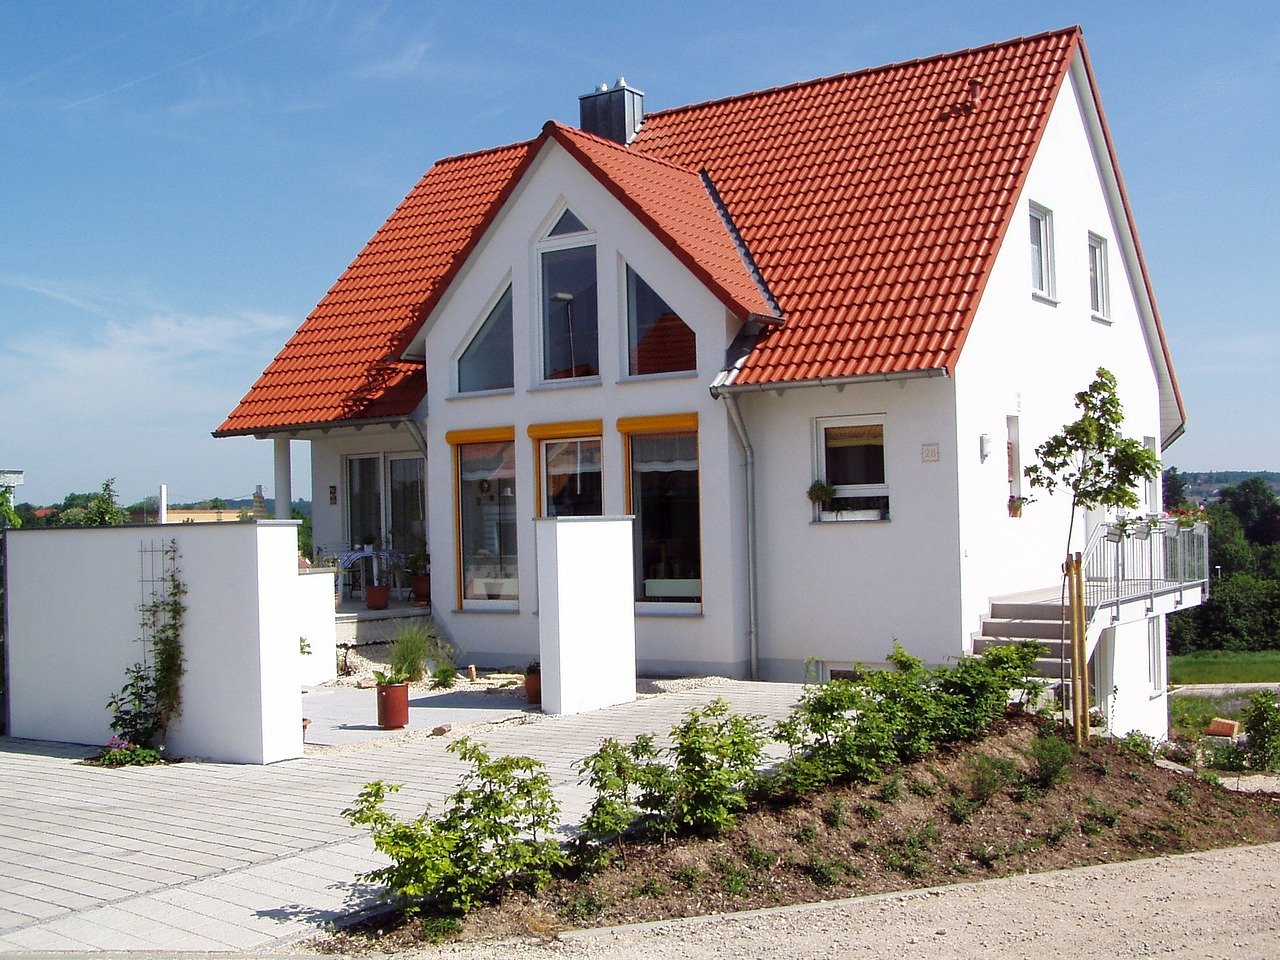 Haus Neubau Eigenheim Dach Dachschräge